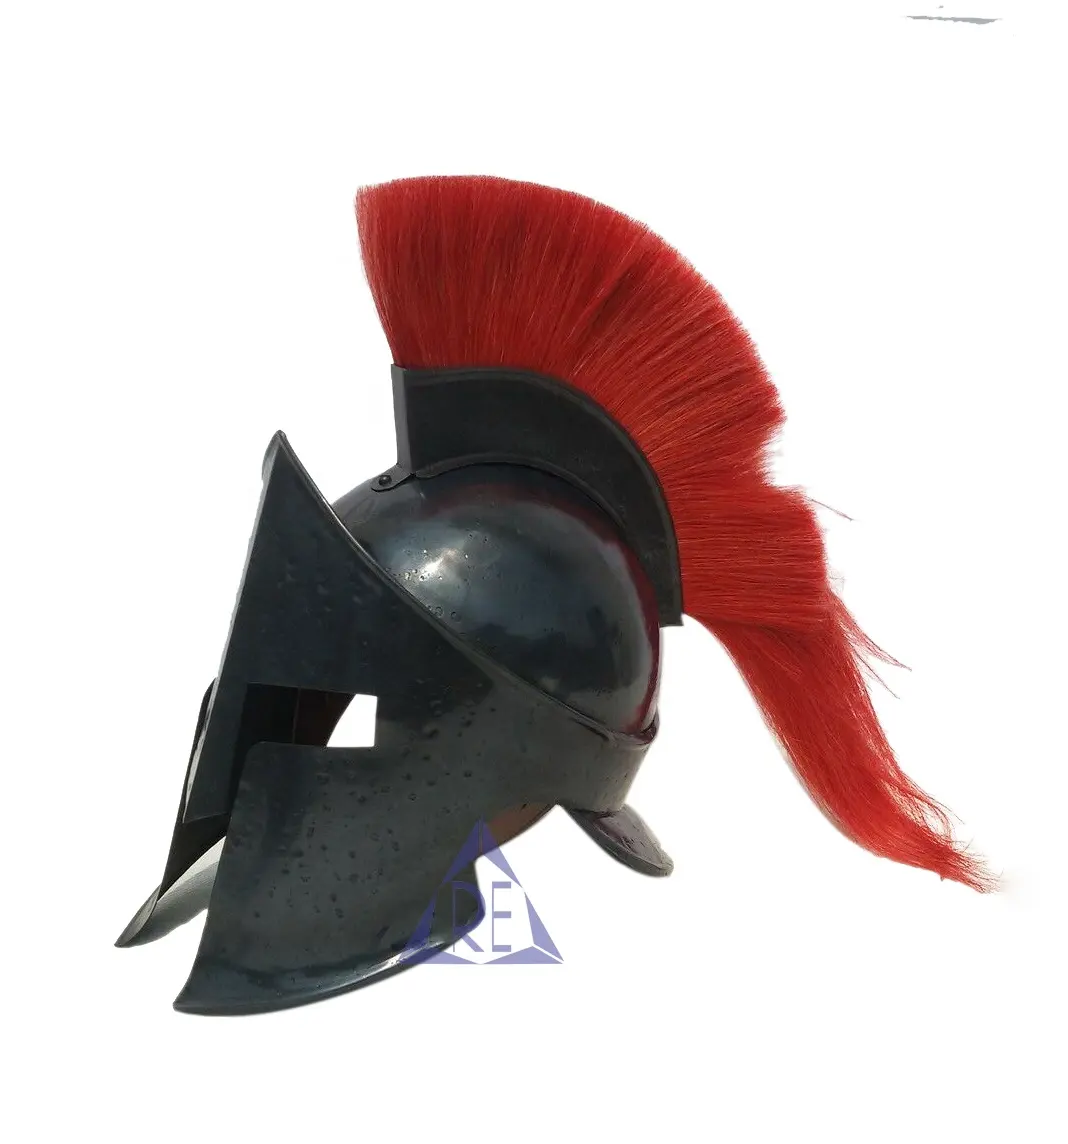 Nouveau casque romain noir roi spartiate avec panache rouge armure médiévale chevalier croisé avec support en bois gratuit meilleur cadeau pour lui